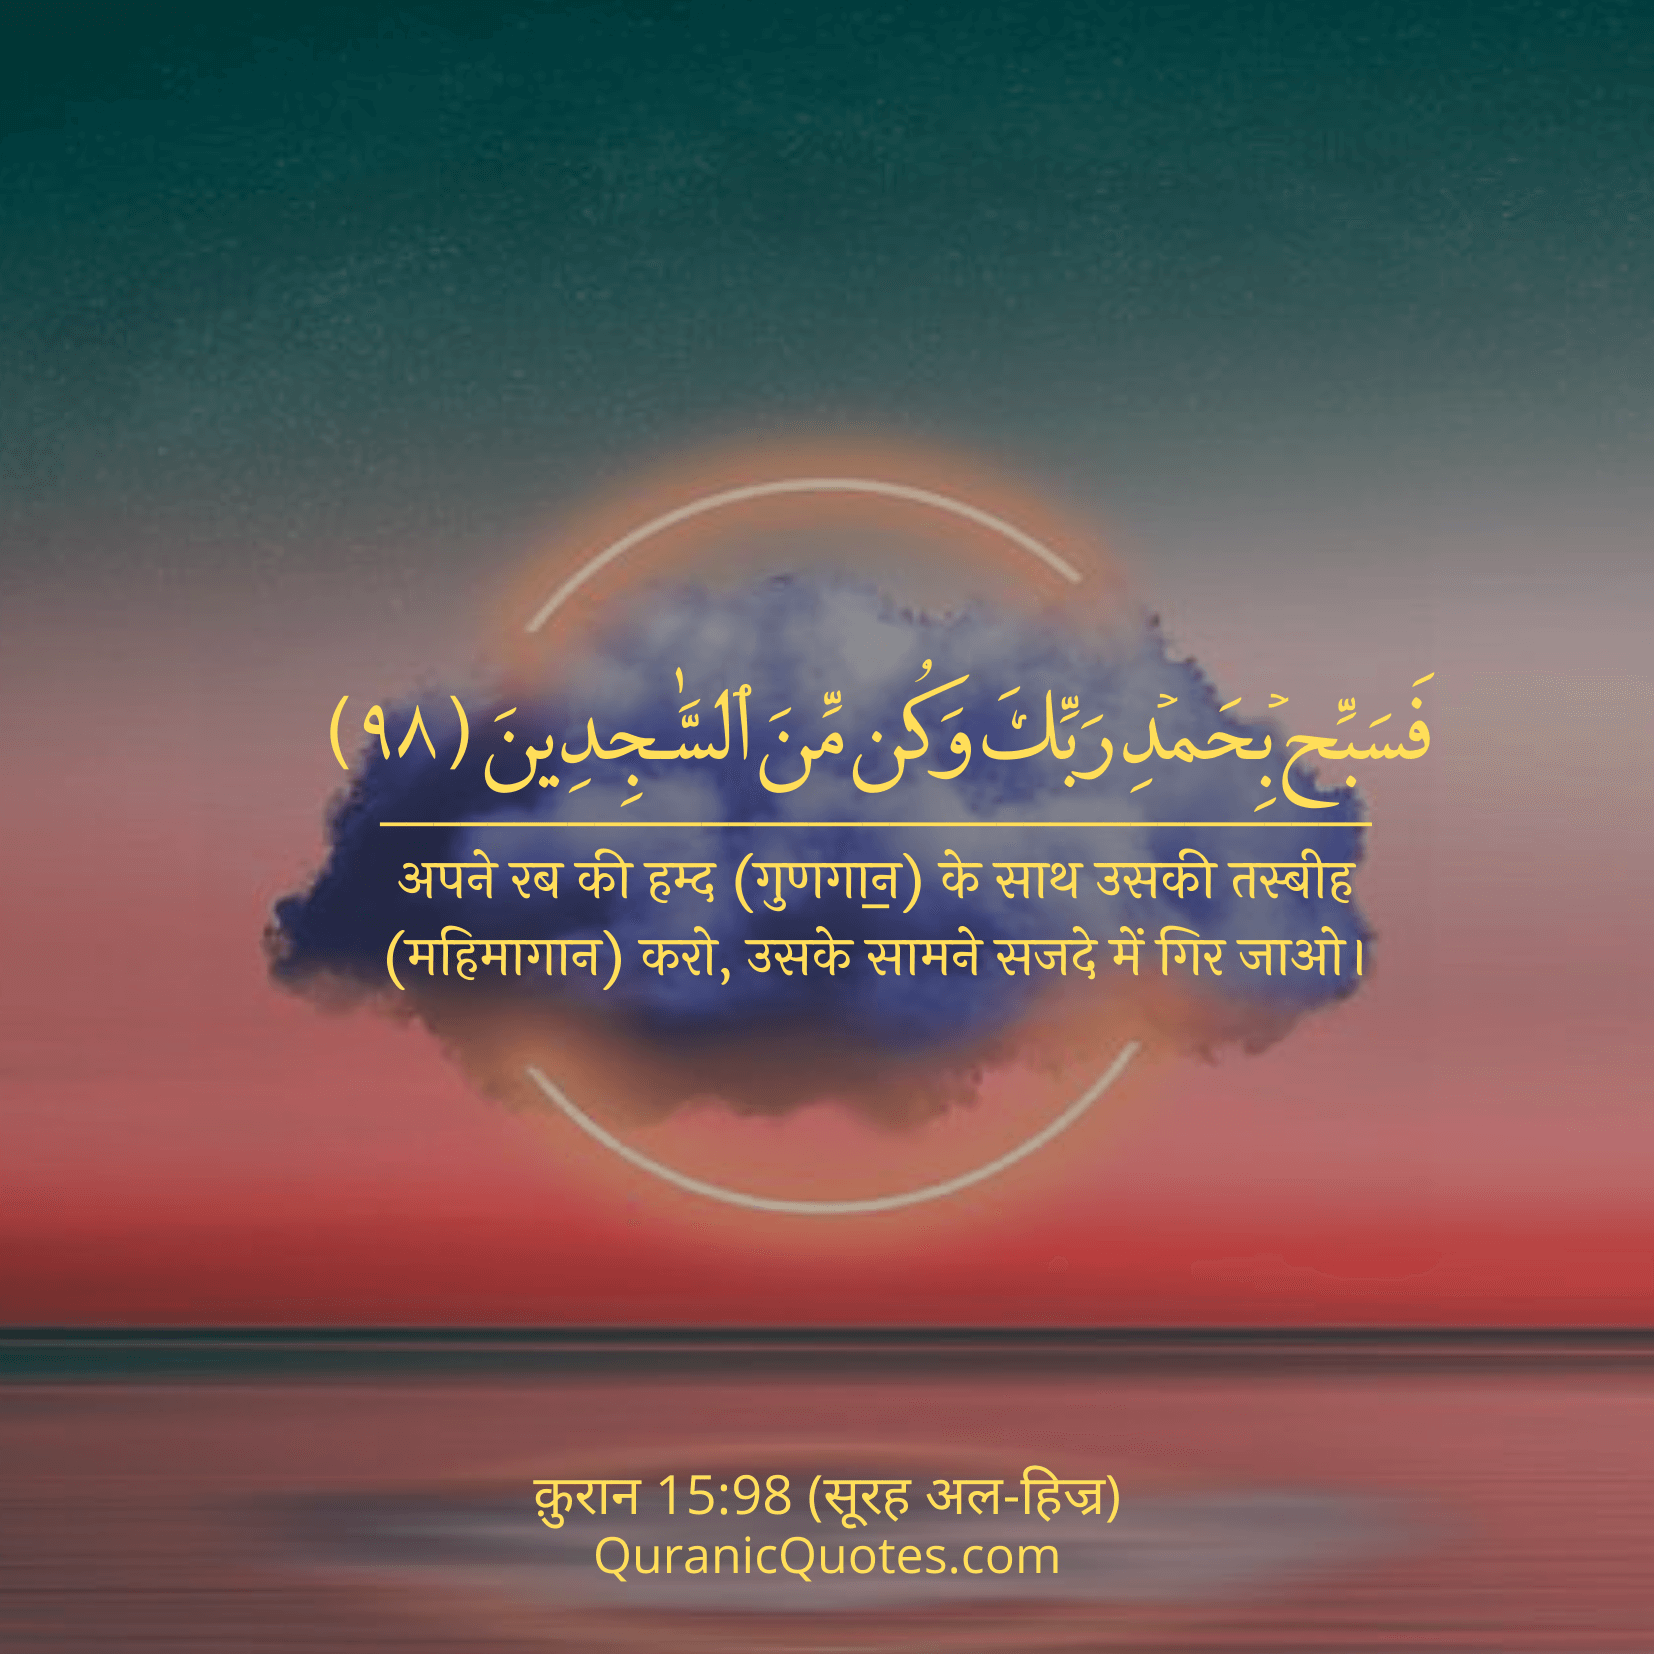 Quranic Quotes Hindi #192Quranic Quotes Hindi #214